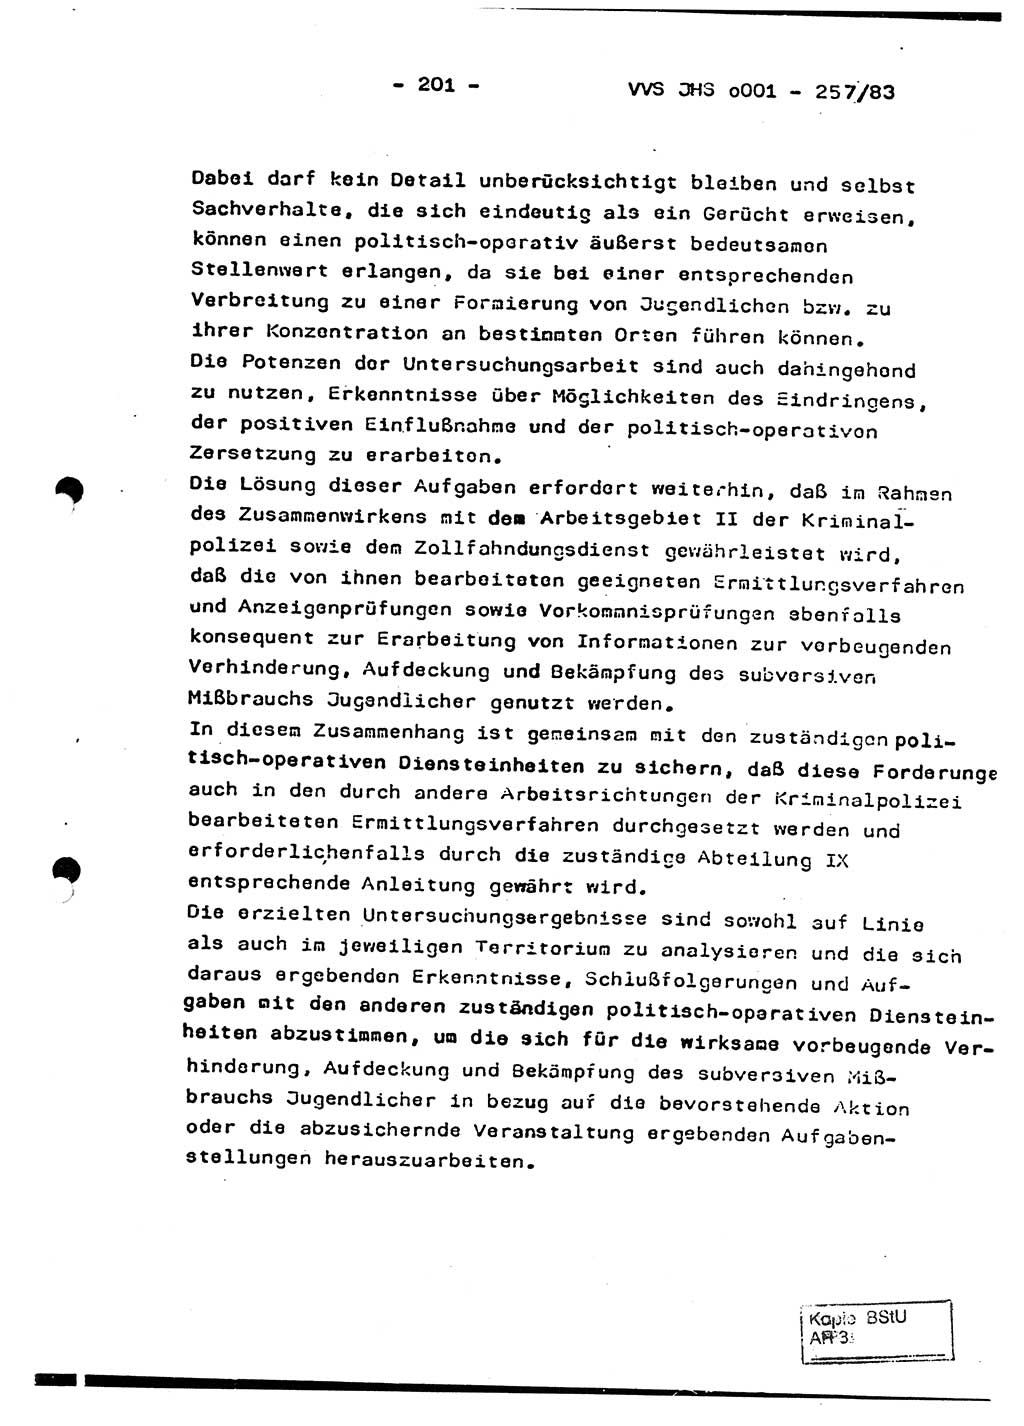 Dissertation, Oberst Helmut Lubas (BV Mdg.), Oberstleutnant Manfred Eschberger (HA IX), Oberleutnant Hans-Jürgen Ludwig (JHS), Ministerium für Staatssicherheit (MfS) [Deutsche Demokratische Republik (DDR)], Juristische Hochschule (JHS), Vertrauliche Verschlußsache (VVS) o001-257/83, Potsdam 1983, Seite 201 (Diss. MfS DDR JHS VVS o001-257/83 1983, S. 201)